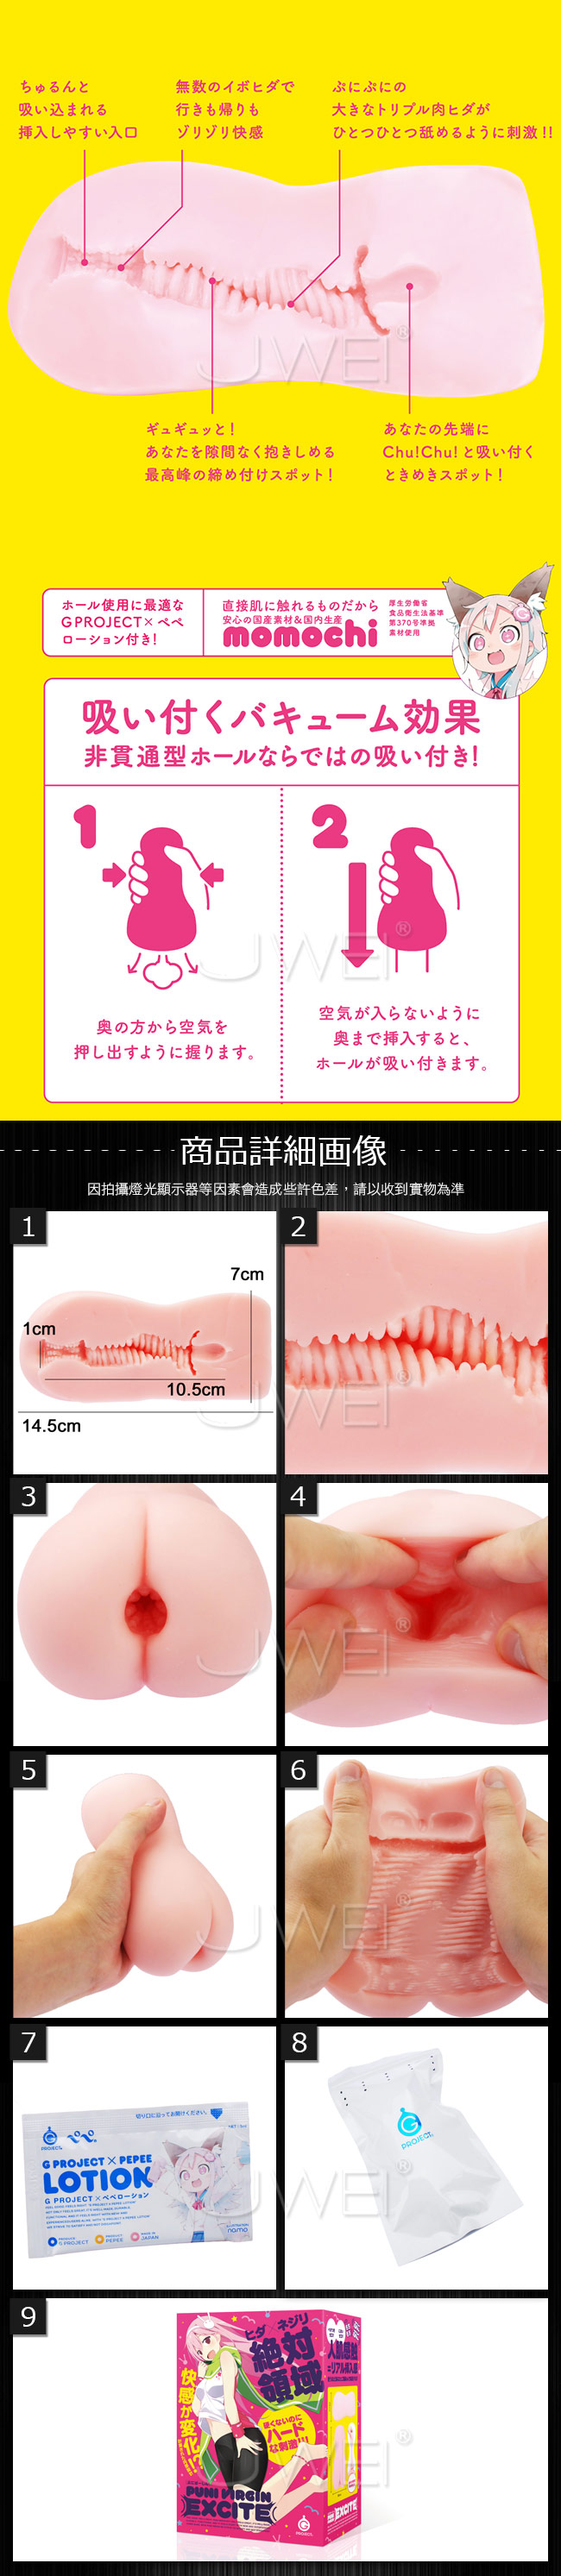 日本EXE．PUTI VIRGIN EXCITE 絕對領域肉厚褶皺刺激通道自慰器